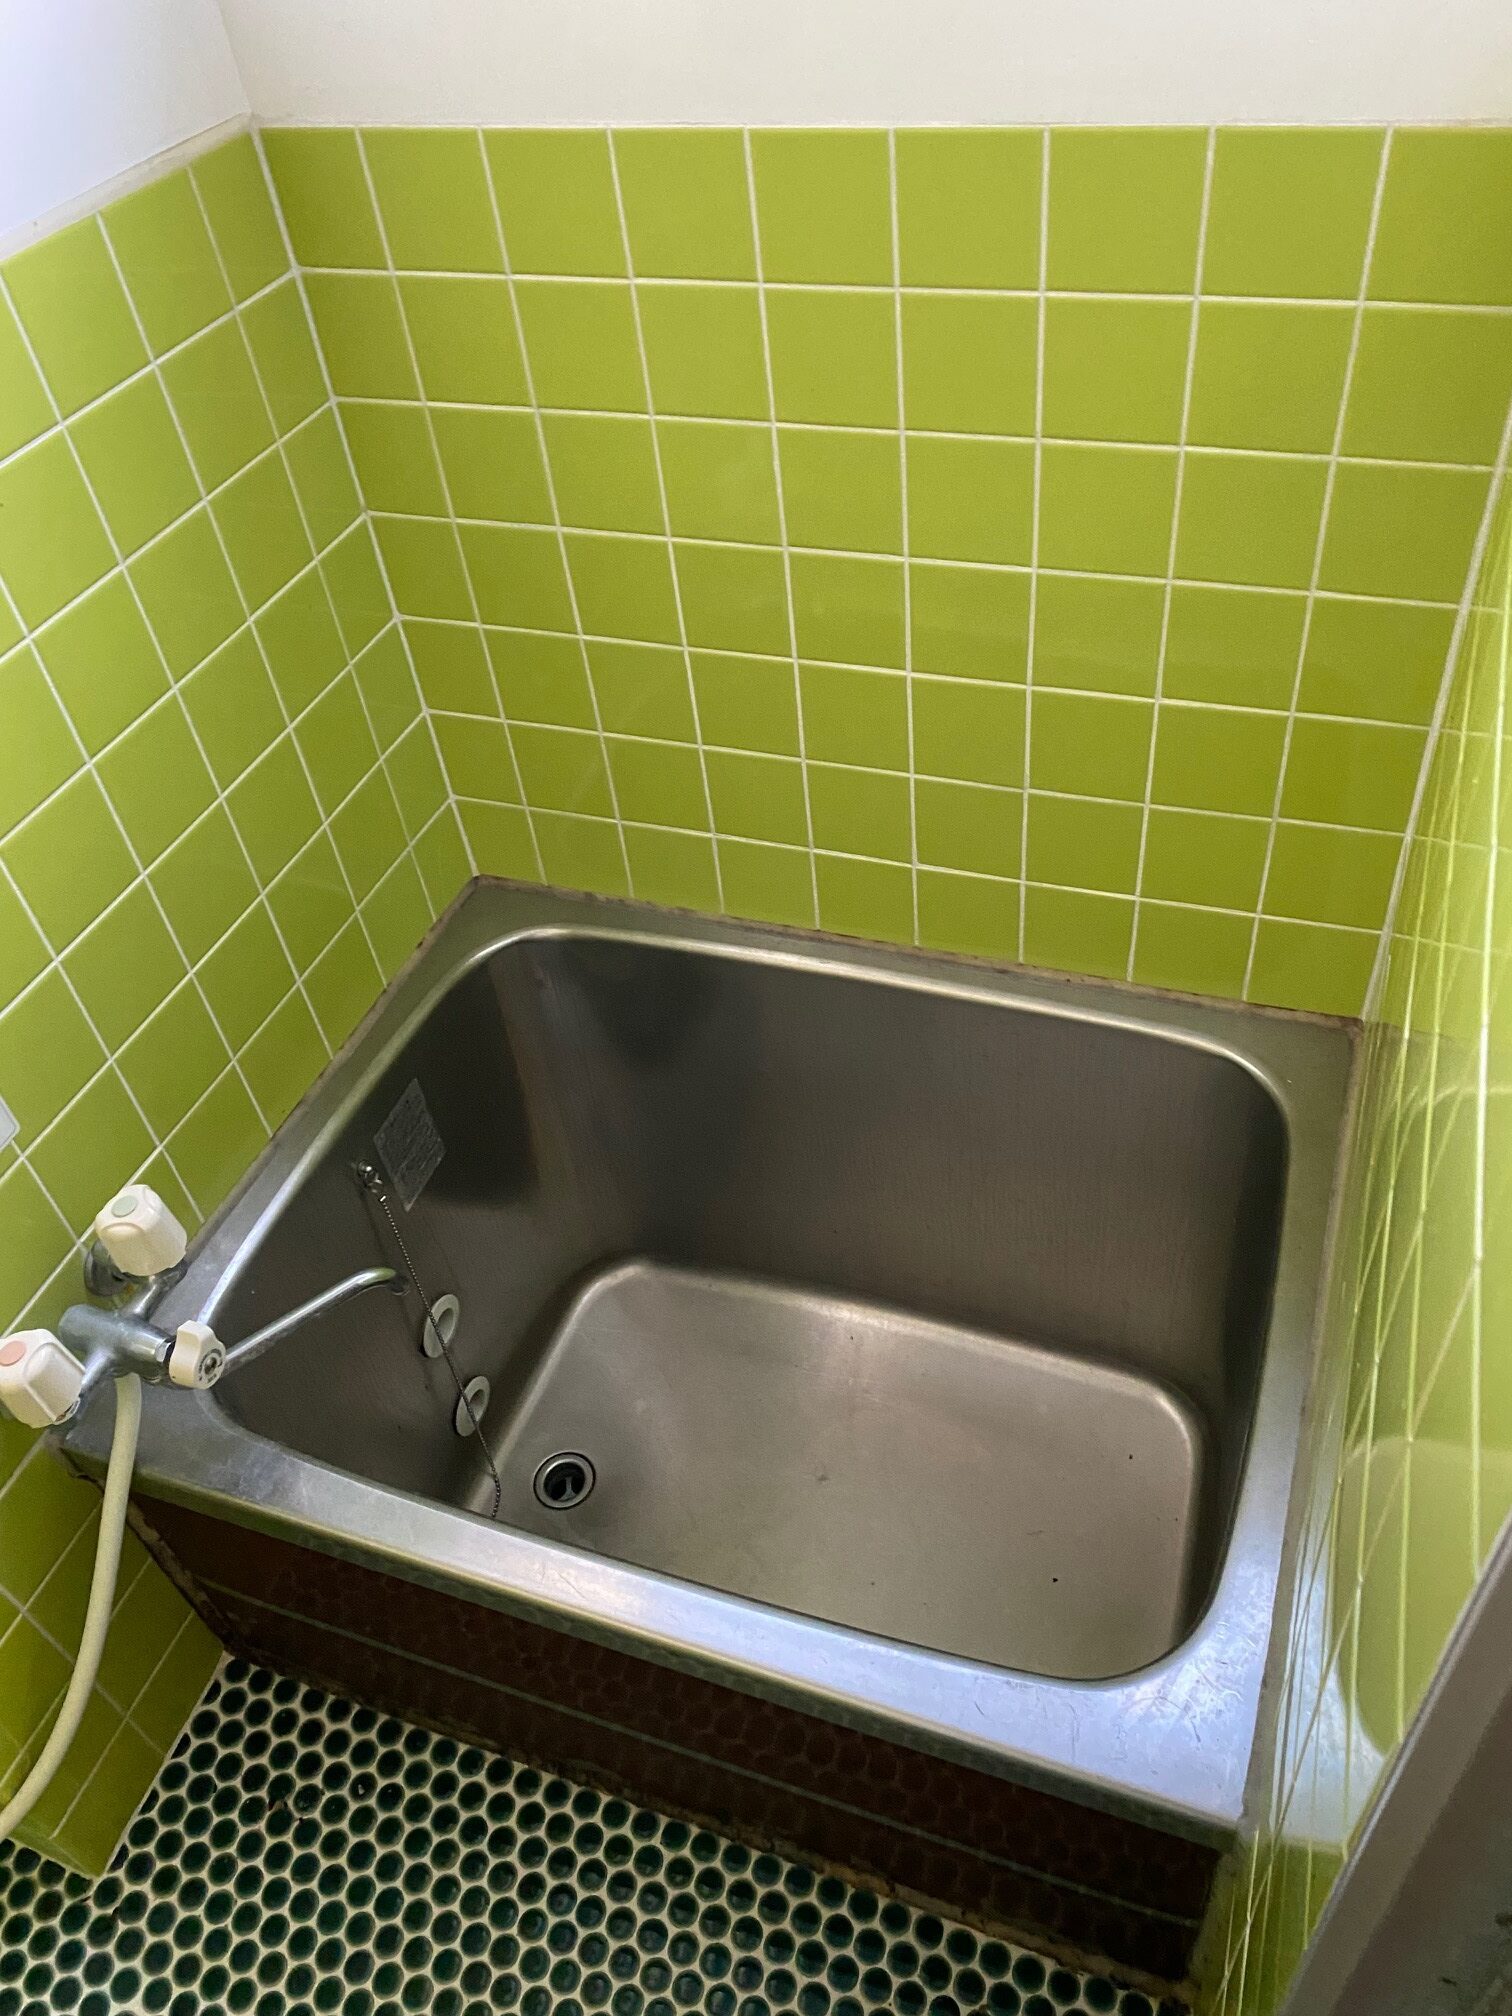 岩手県久慈市の物件のグリーンのタイルがさわやかな浴室は、使用感はありますが、このまま使うことも可能です。気になる場合はリフォームを検討しましょう。